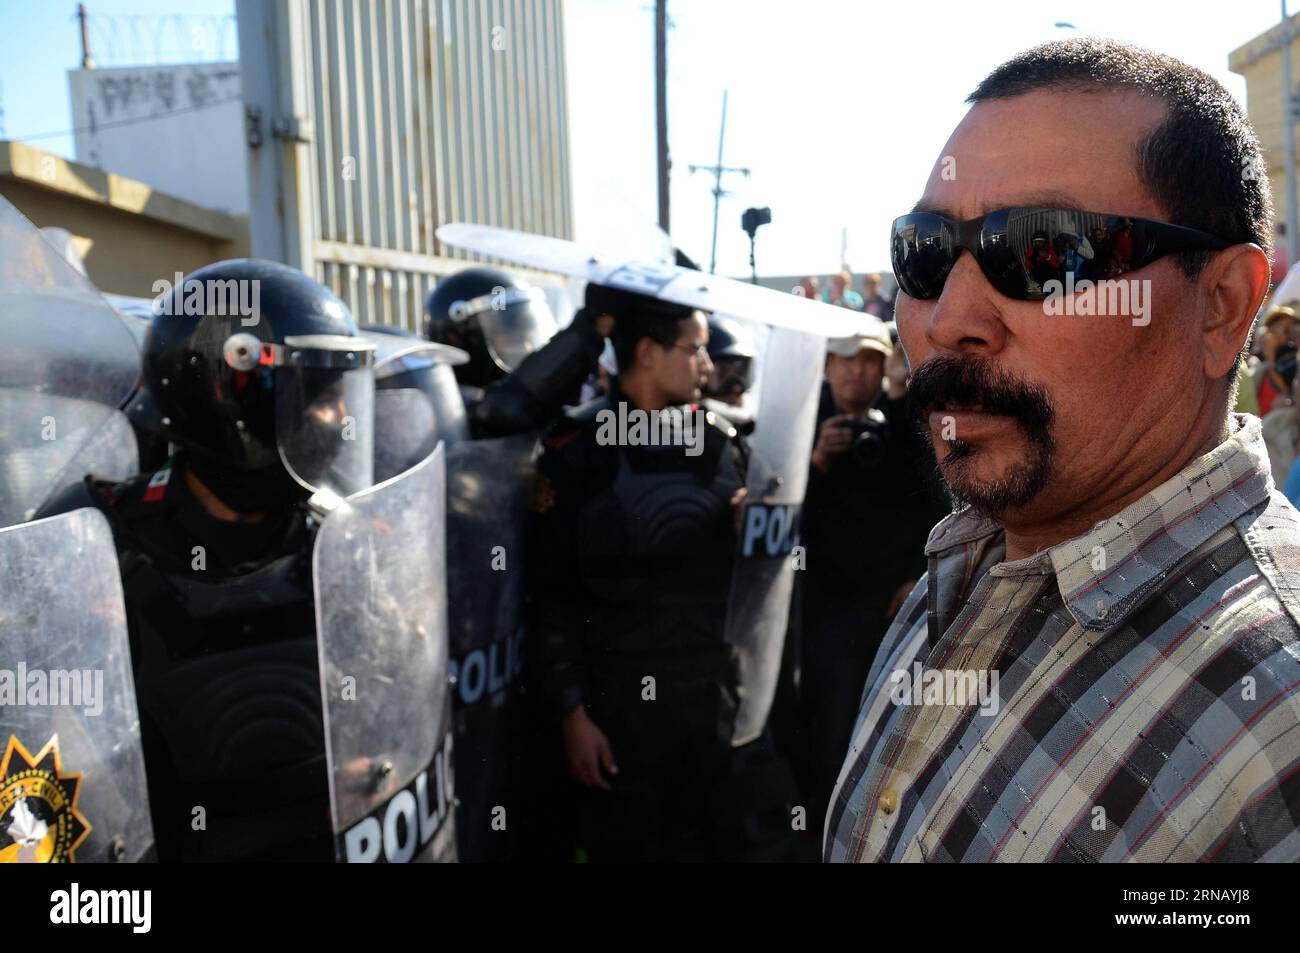 (160211) -- MONTERREY, le 11 février 2016 -- le membre de la famille d'un détenu attend des renseignements à l'extérieur de la prison Topo Chico, à Monterrey, dans l'État de Nuevo Leon, au Mexique, le 11 février 2016. Jaime Rodriguez Calderon, gouverneur de Nuevo Leon, a informé lors d'une conférence de presse que 52 personnes avaient été tuées et 12 blessées après qu'une bagarre eut éclaté entre deux fractions rivales de détenus à l'intérieur de la prison de Topo Chico. ABC) (ce) MEXICO-MONTERREY-SECURITY-PRISON e ABC PUBLICATIONxNOTxINxCHN Monterrey fév 11 2016 le membre de la famille du détenu To attend des renseignements à l'extérieur de la prison Topo Chico à Monterrey in Banque D'Images